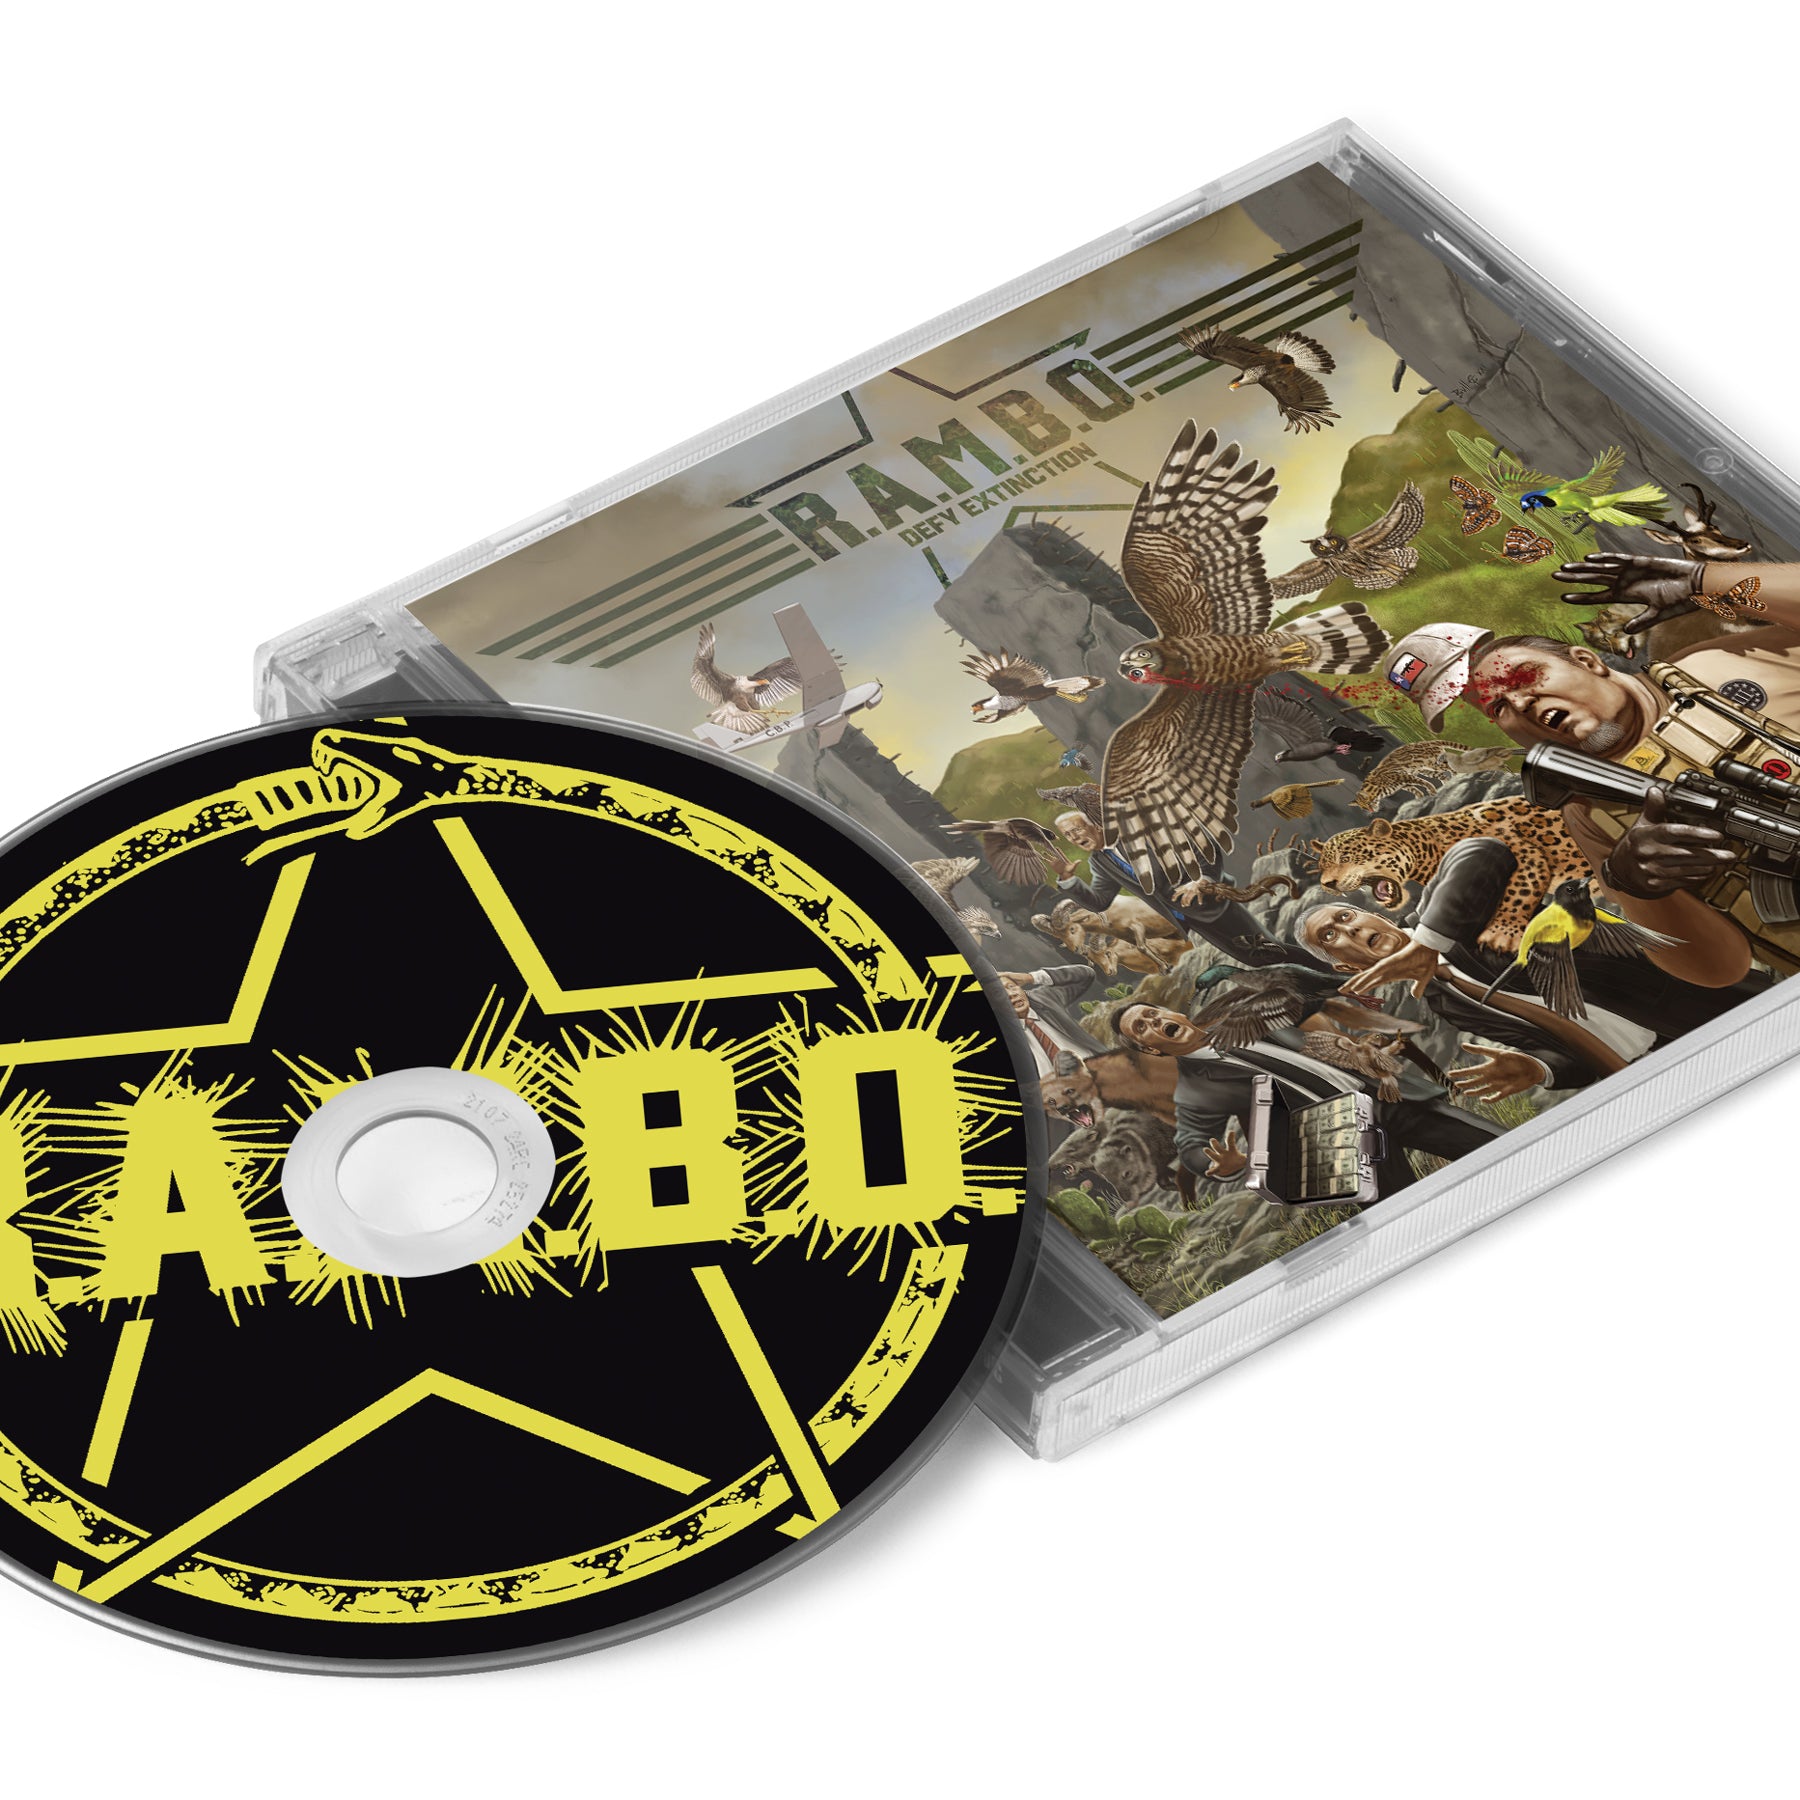 R.A.M.B.O. "Defy Extinction" CD